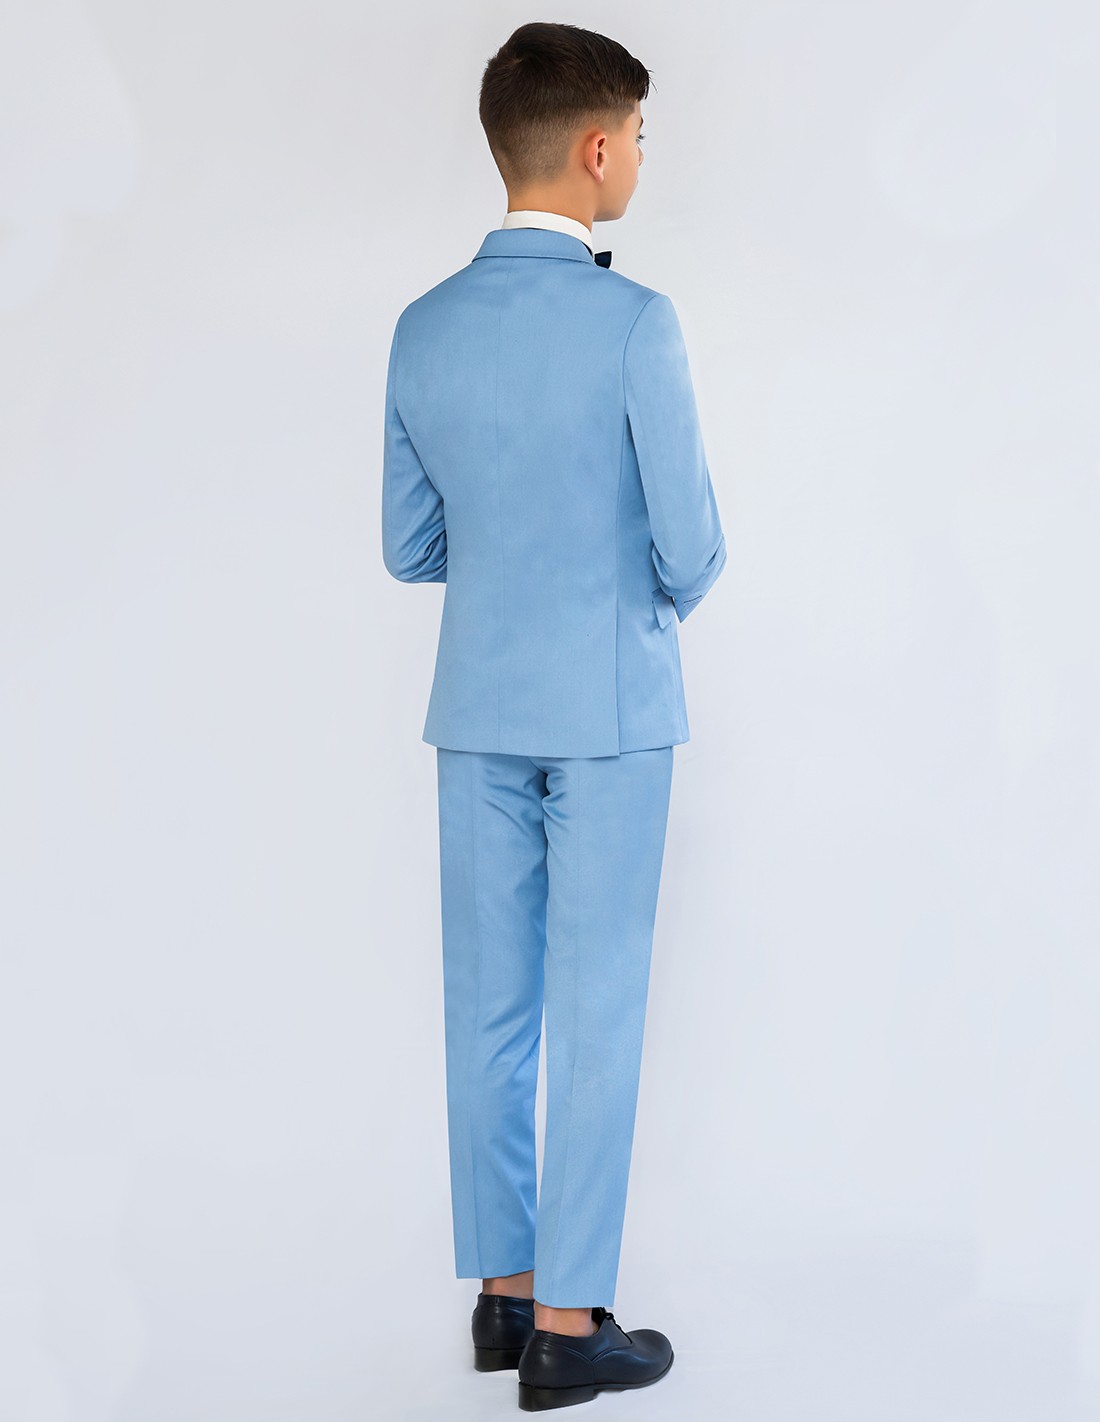 Costume garçon Nicolas bleu ciel pour mariage en jeans